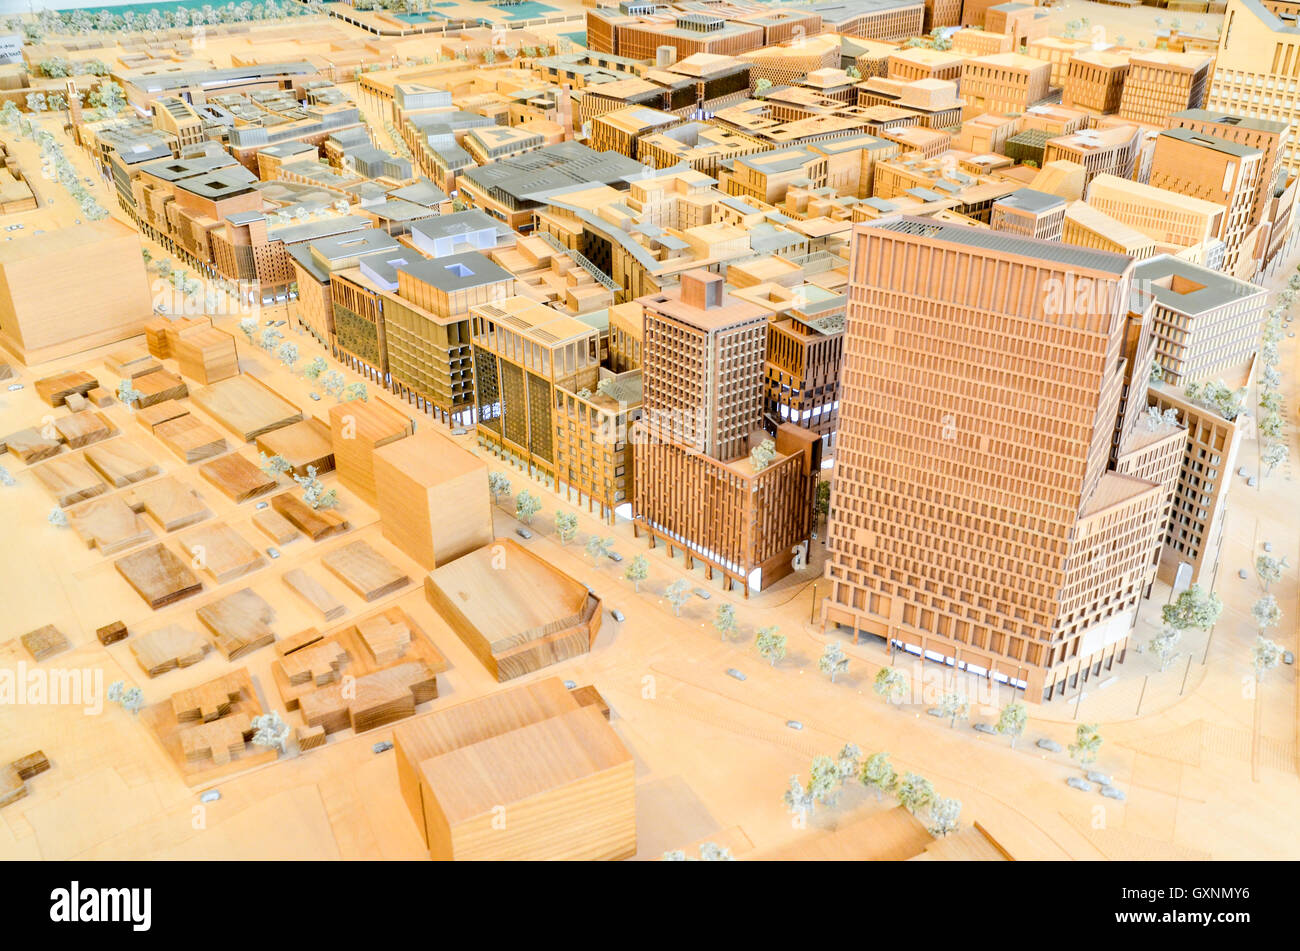 Modell der Innenstadt von Doha in der Msheireb Bereicherung Mitte Stockfoto